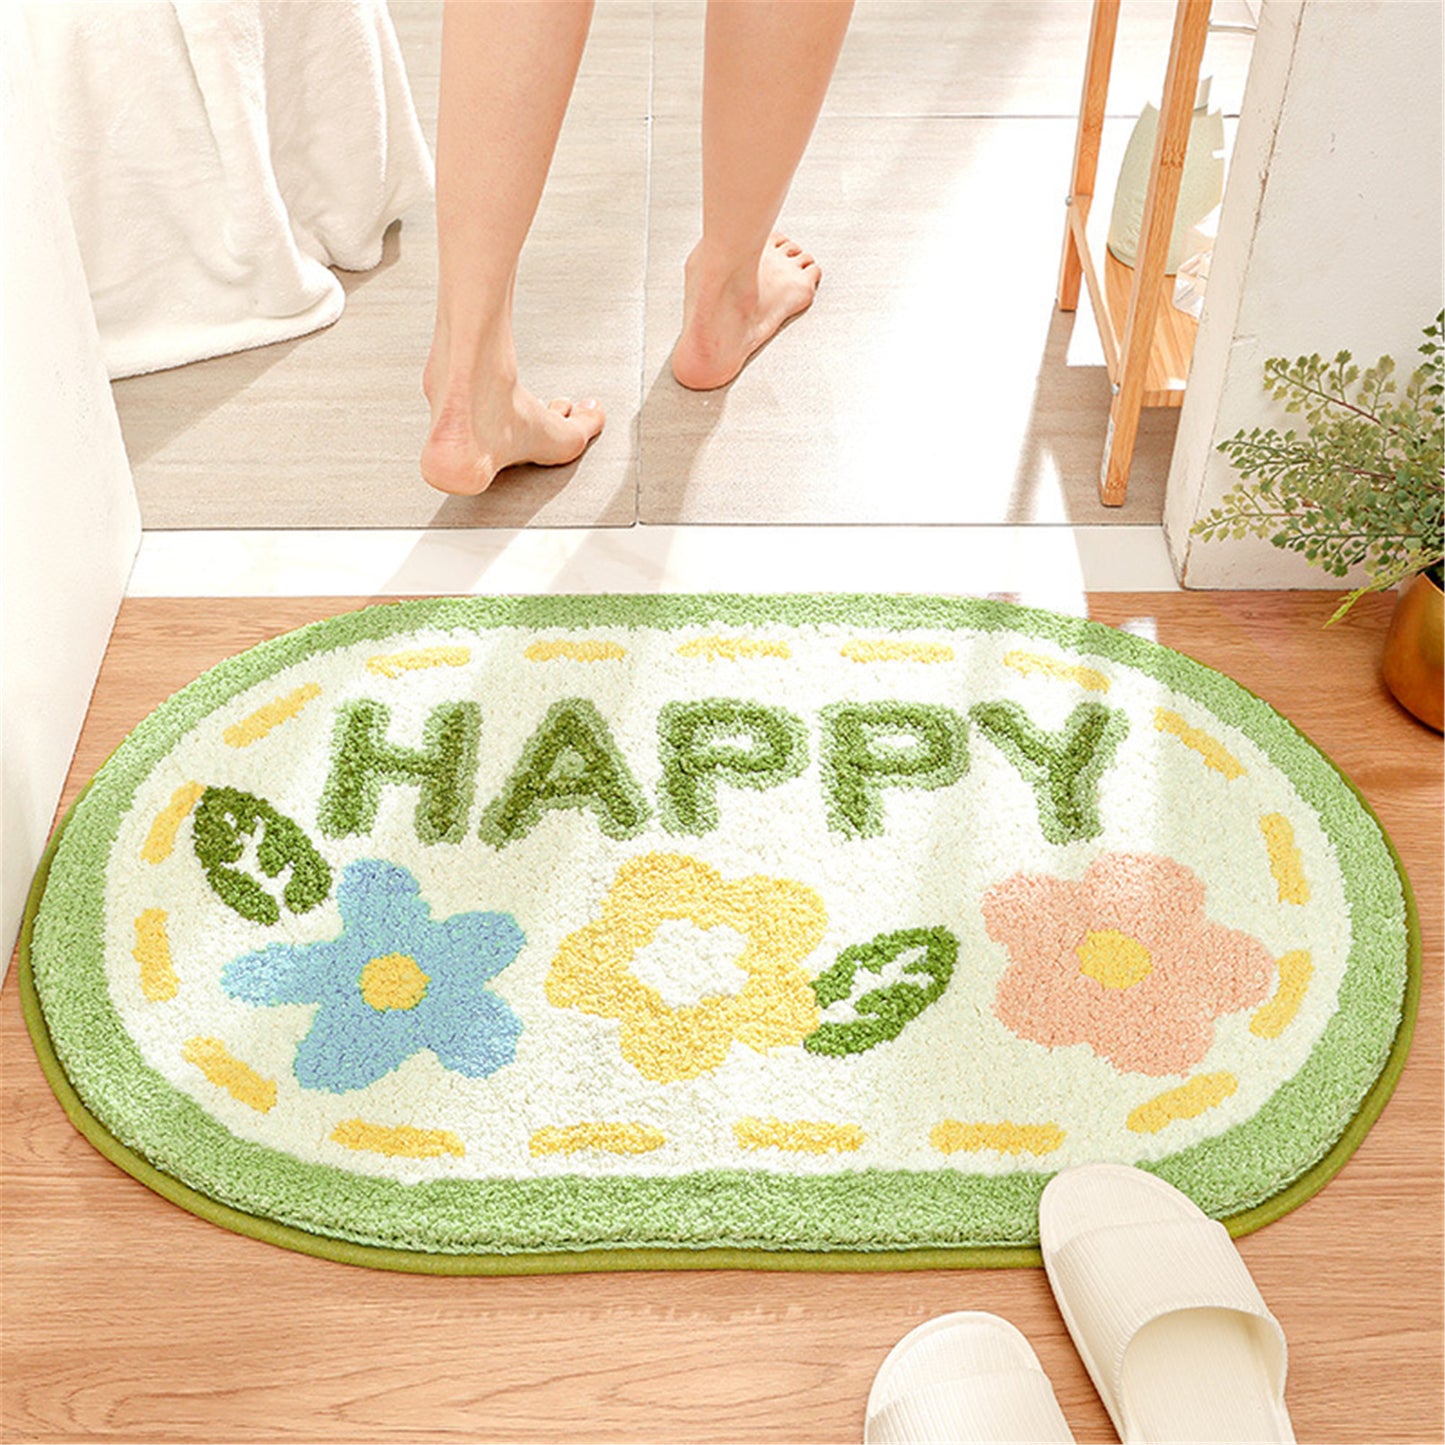 Happy flower bath mat colorful cute bathroom decor